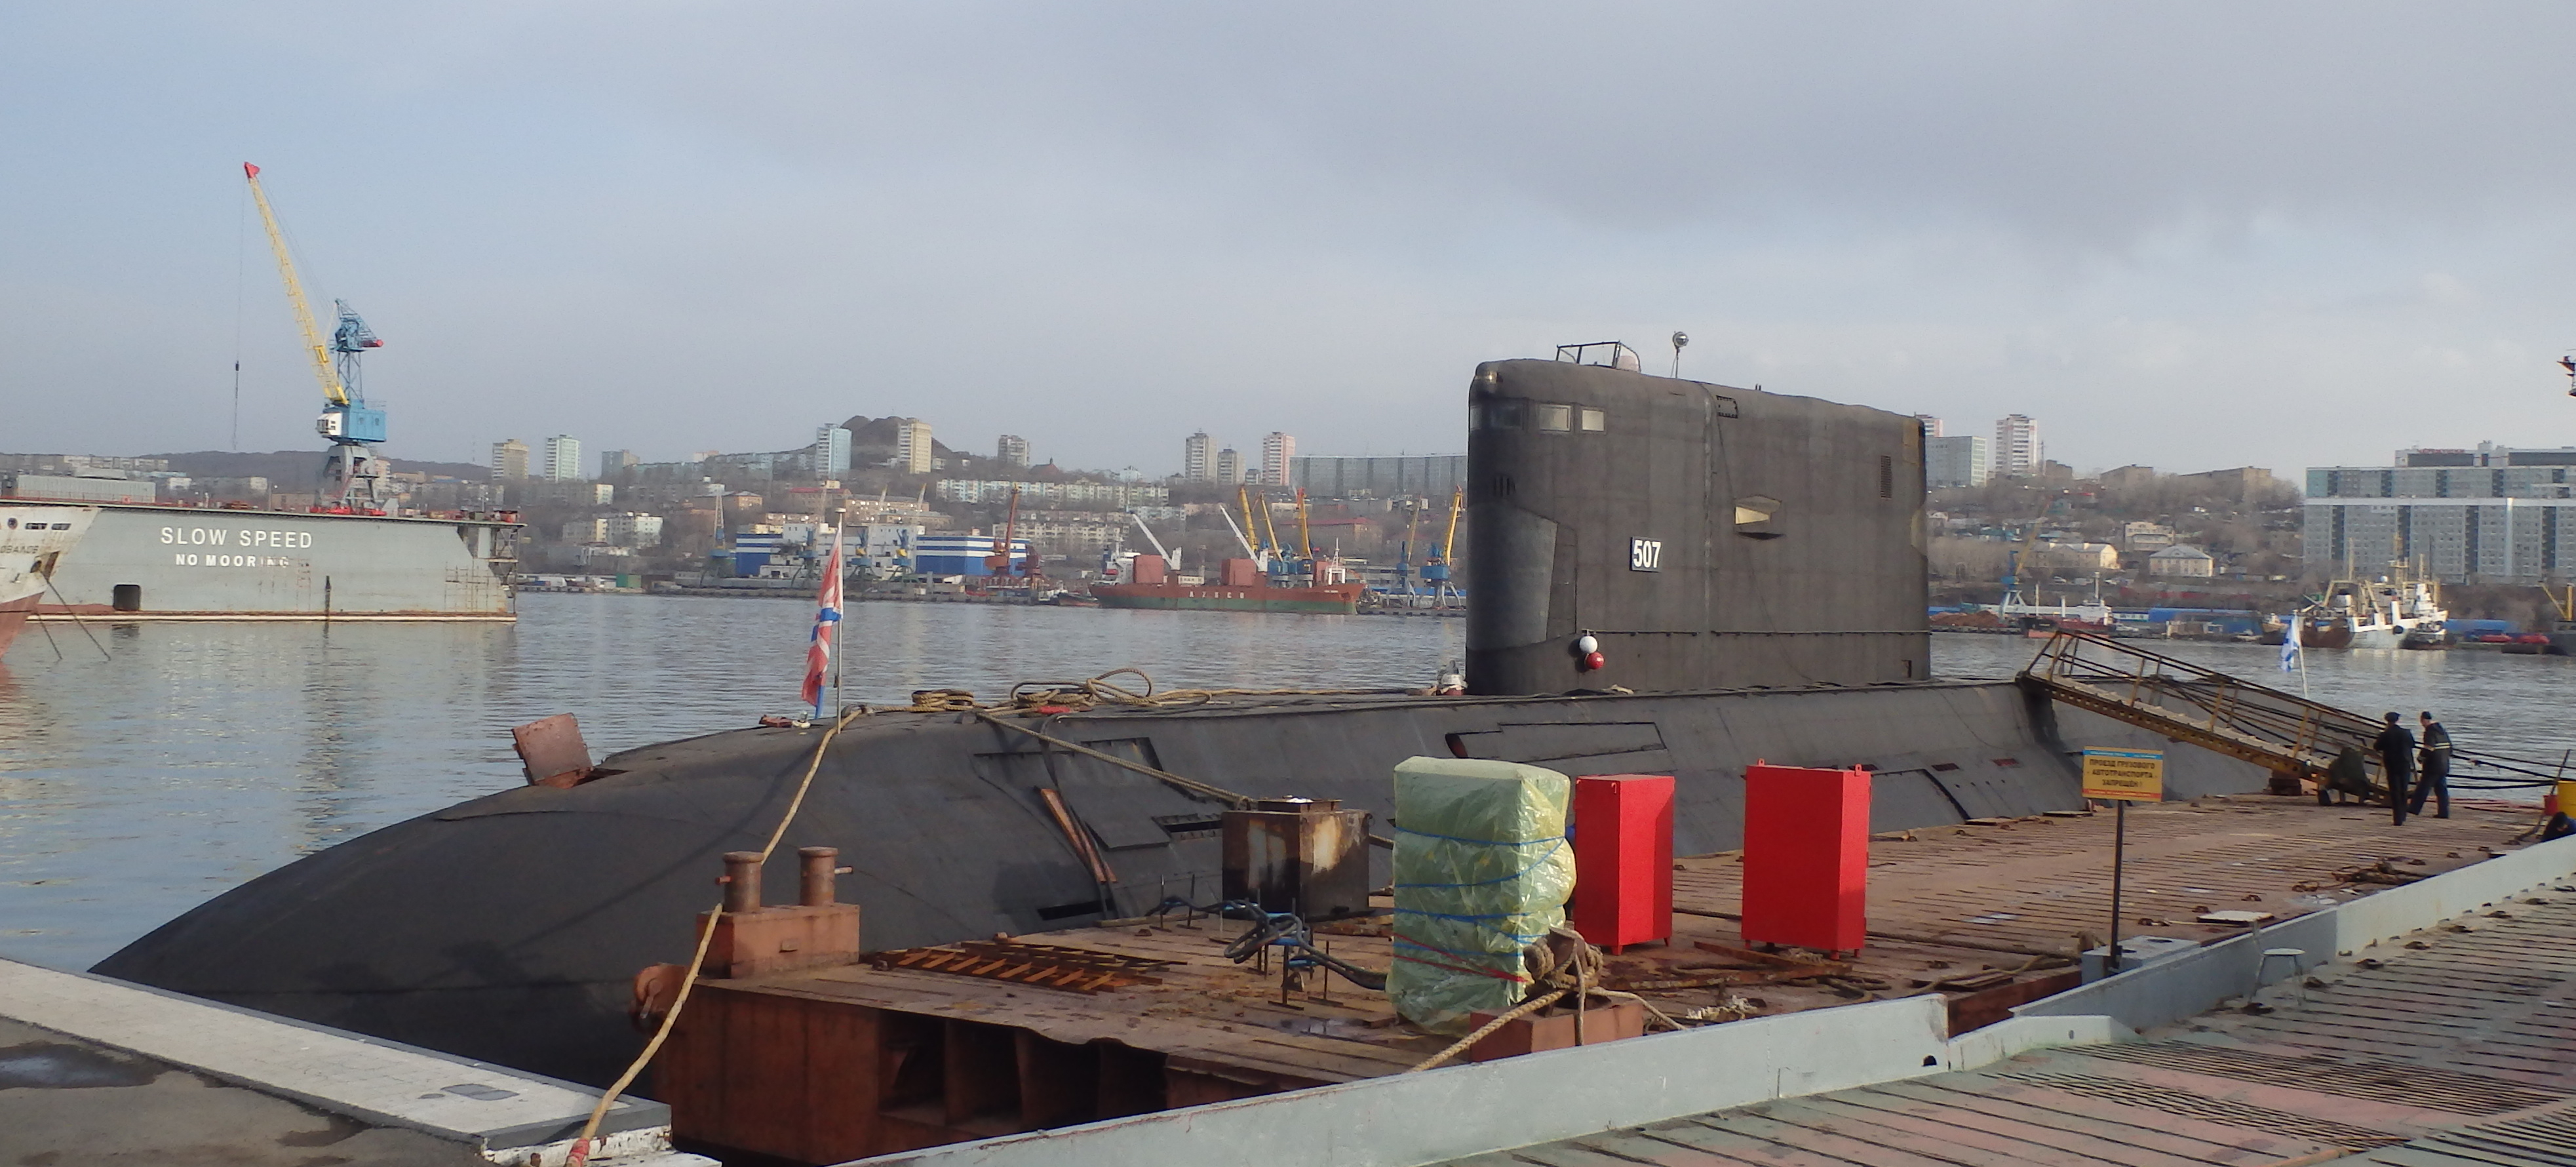 Пл й. Б 345 Могоча подводная лодка. Б-345 «Могоча». Подводная лодка Краснокаменск Владивосток. Б 345 Могоча подводная.